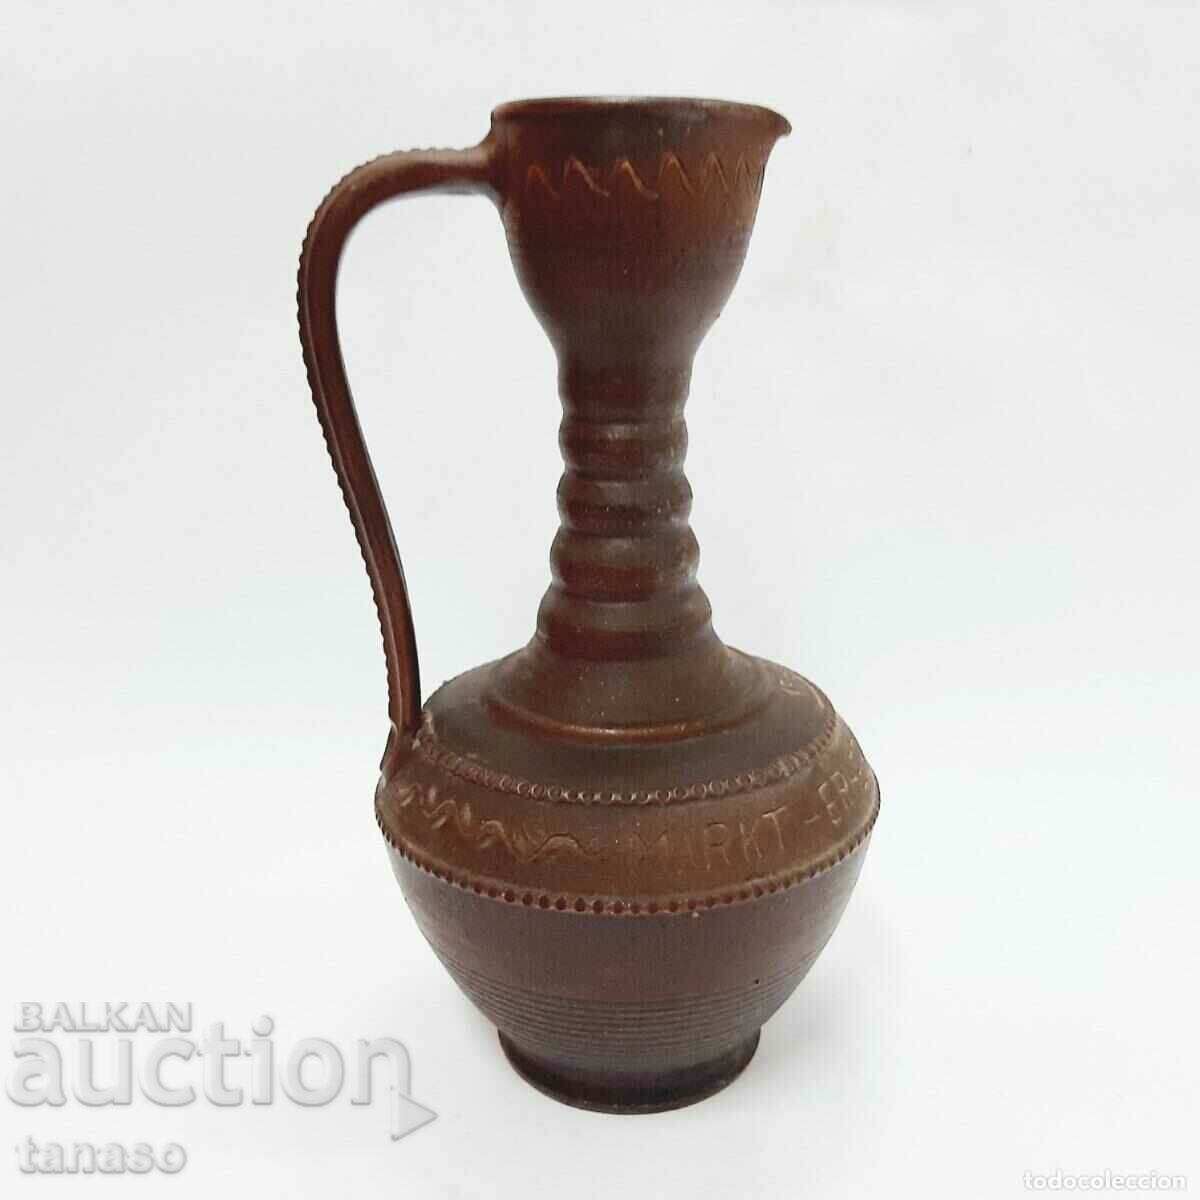 Old German ceramic jug, 1969 (12.3)